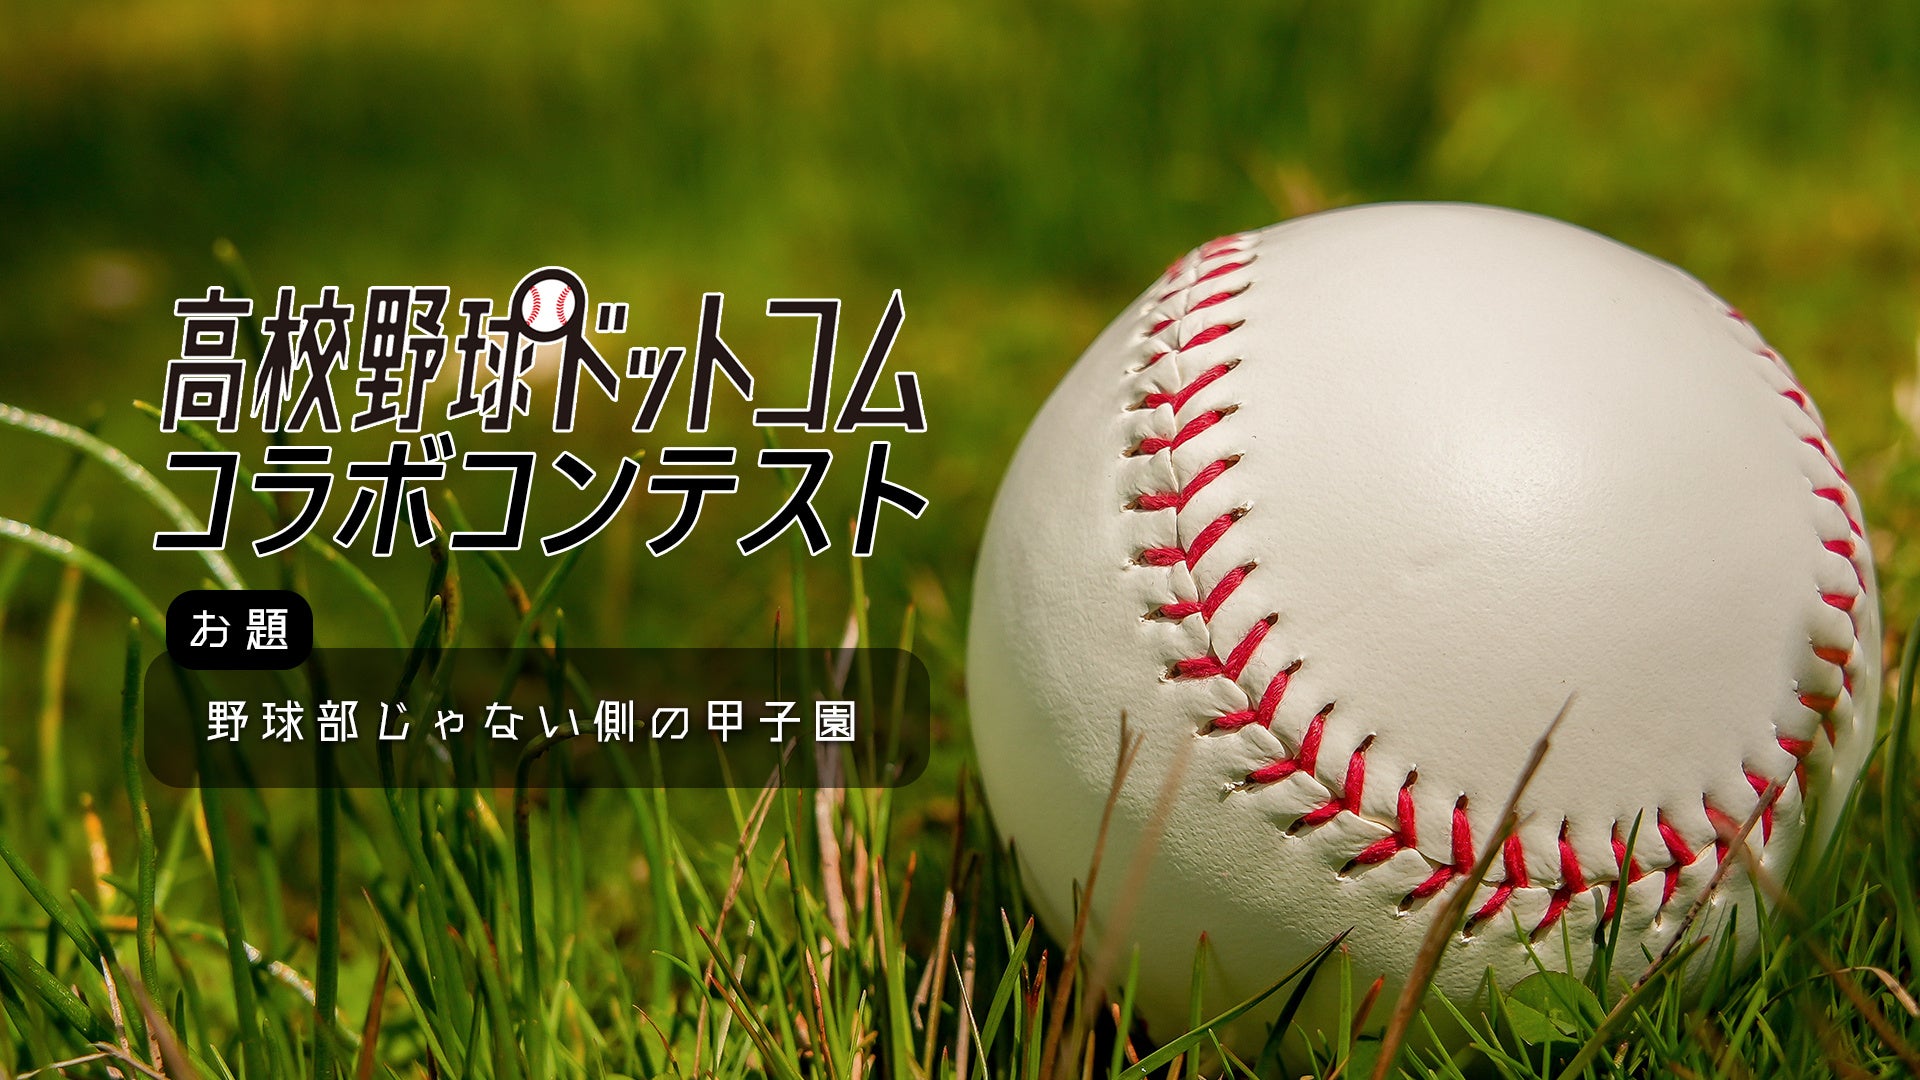 monogatary.comが「高校野球ドットコム」とのコラボコンテスト「野球部じゃない側の甲子園」を開幕！